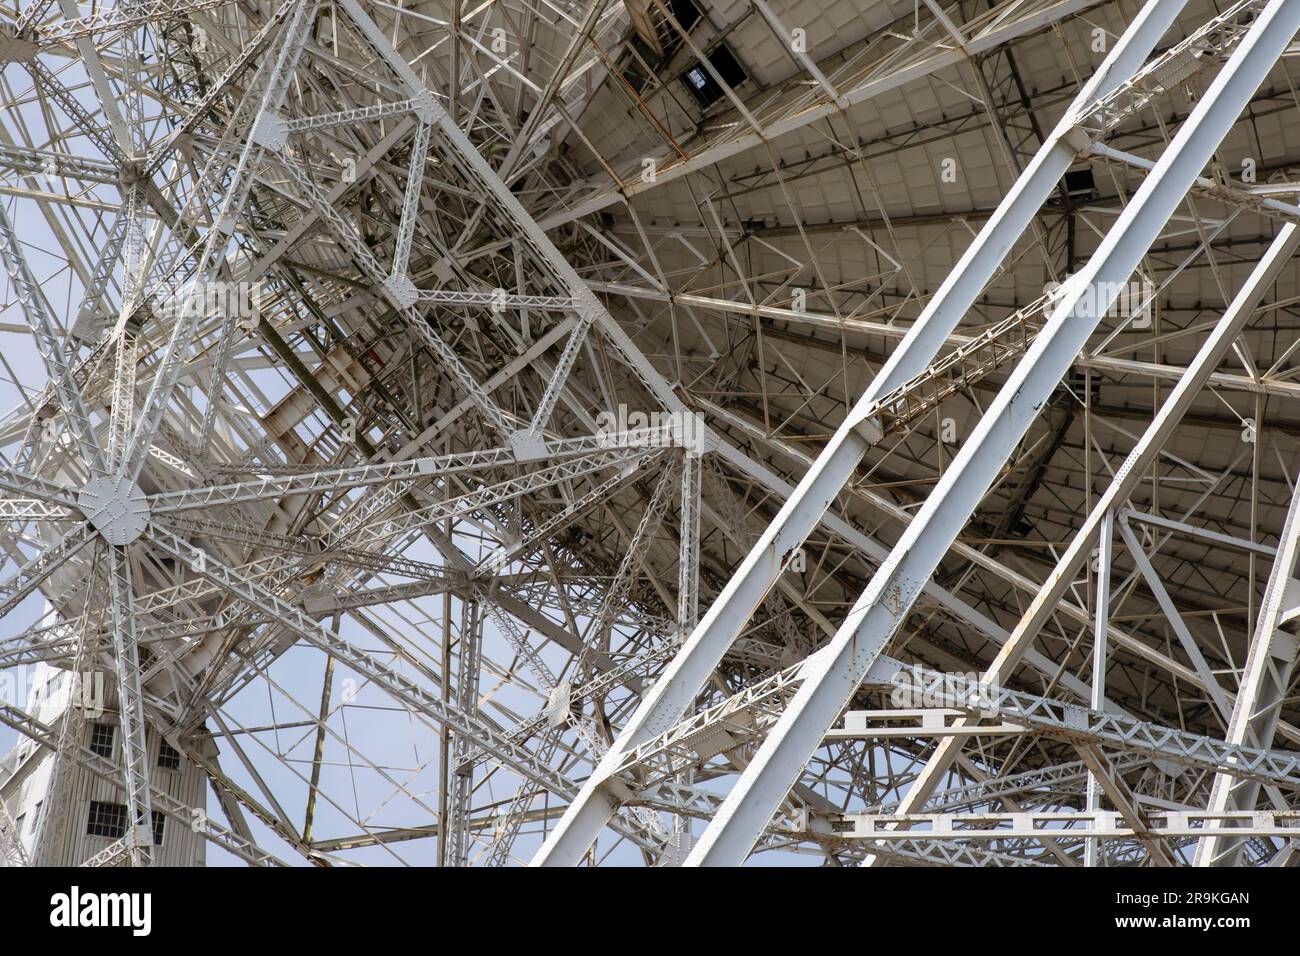 Vista della complessa struttura a reticolo in acciaio dell'enorme radiotelescopio Lovell con piastra girevole da 76 metri presso Jodrell Bank, Cheshire, Regno Unito Foto Stock